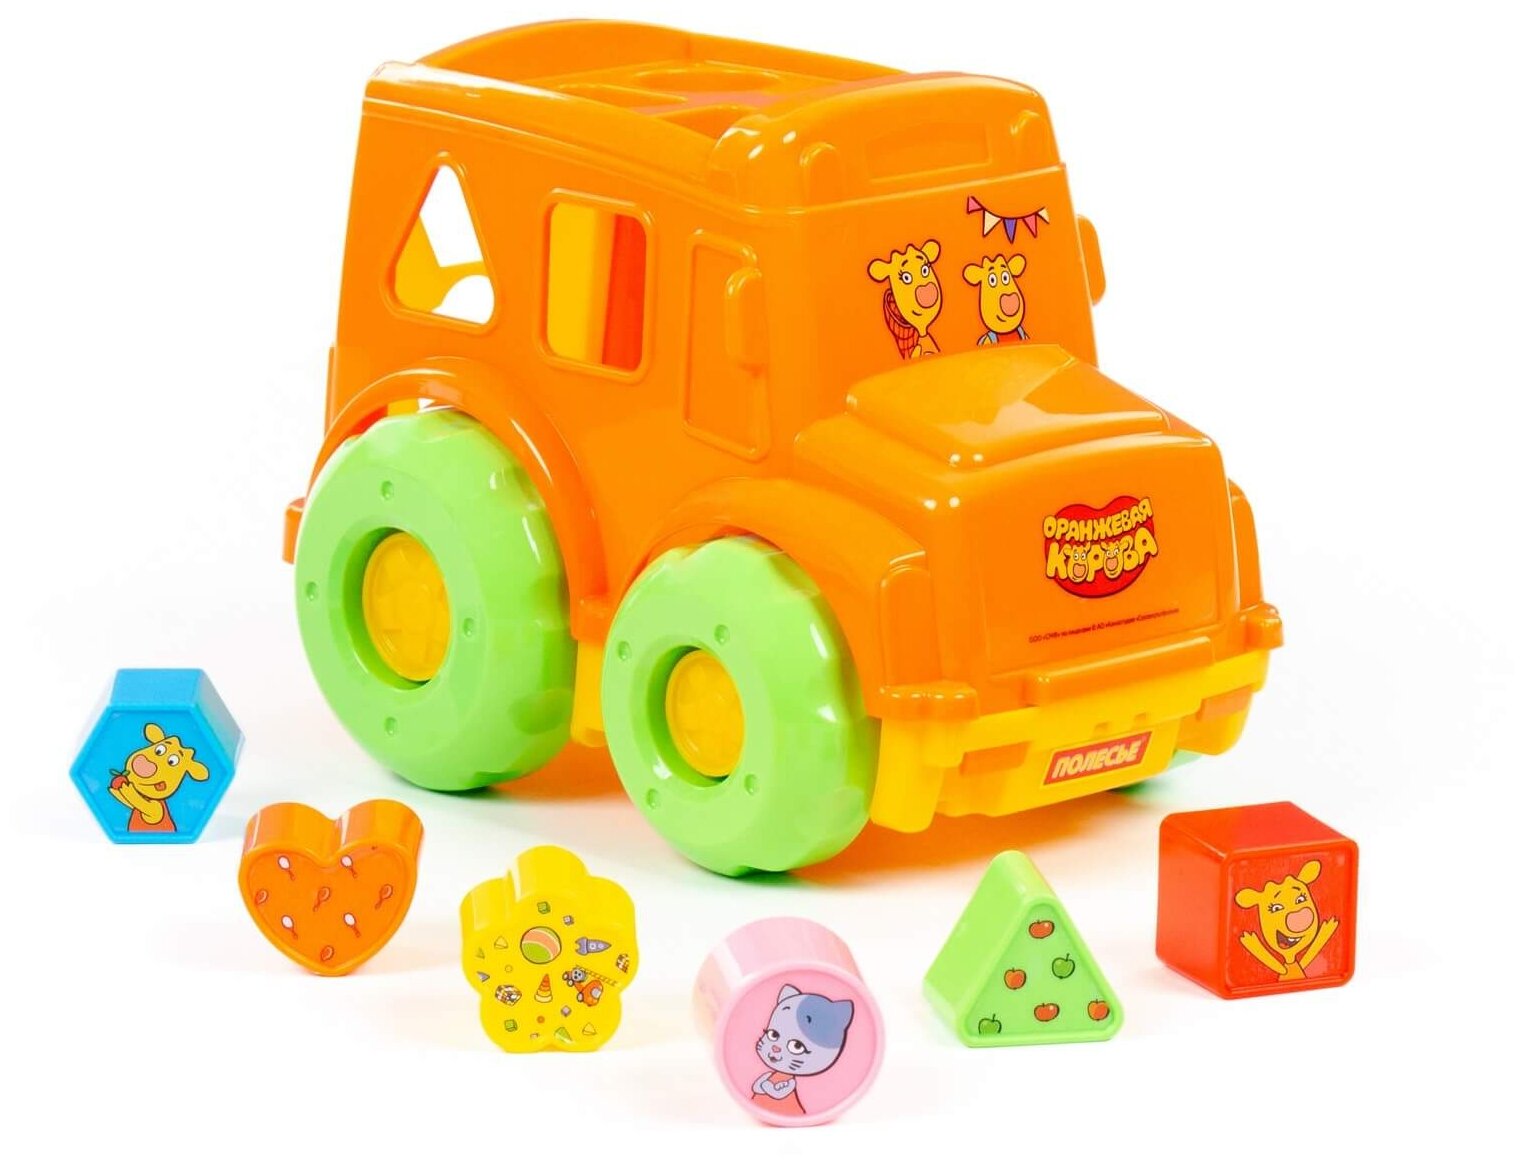 Развивающая игрушка Полесье Оранжевая корова Автобус в коробке, 91703, 6 дет., оранжевый